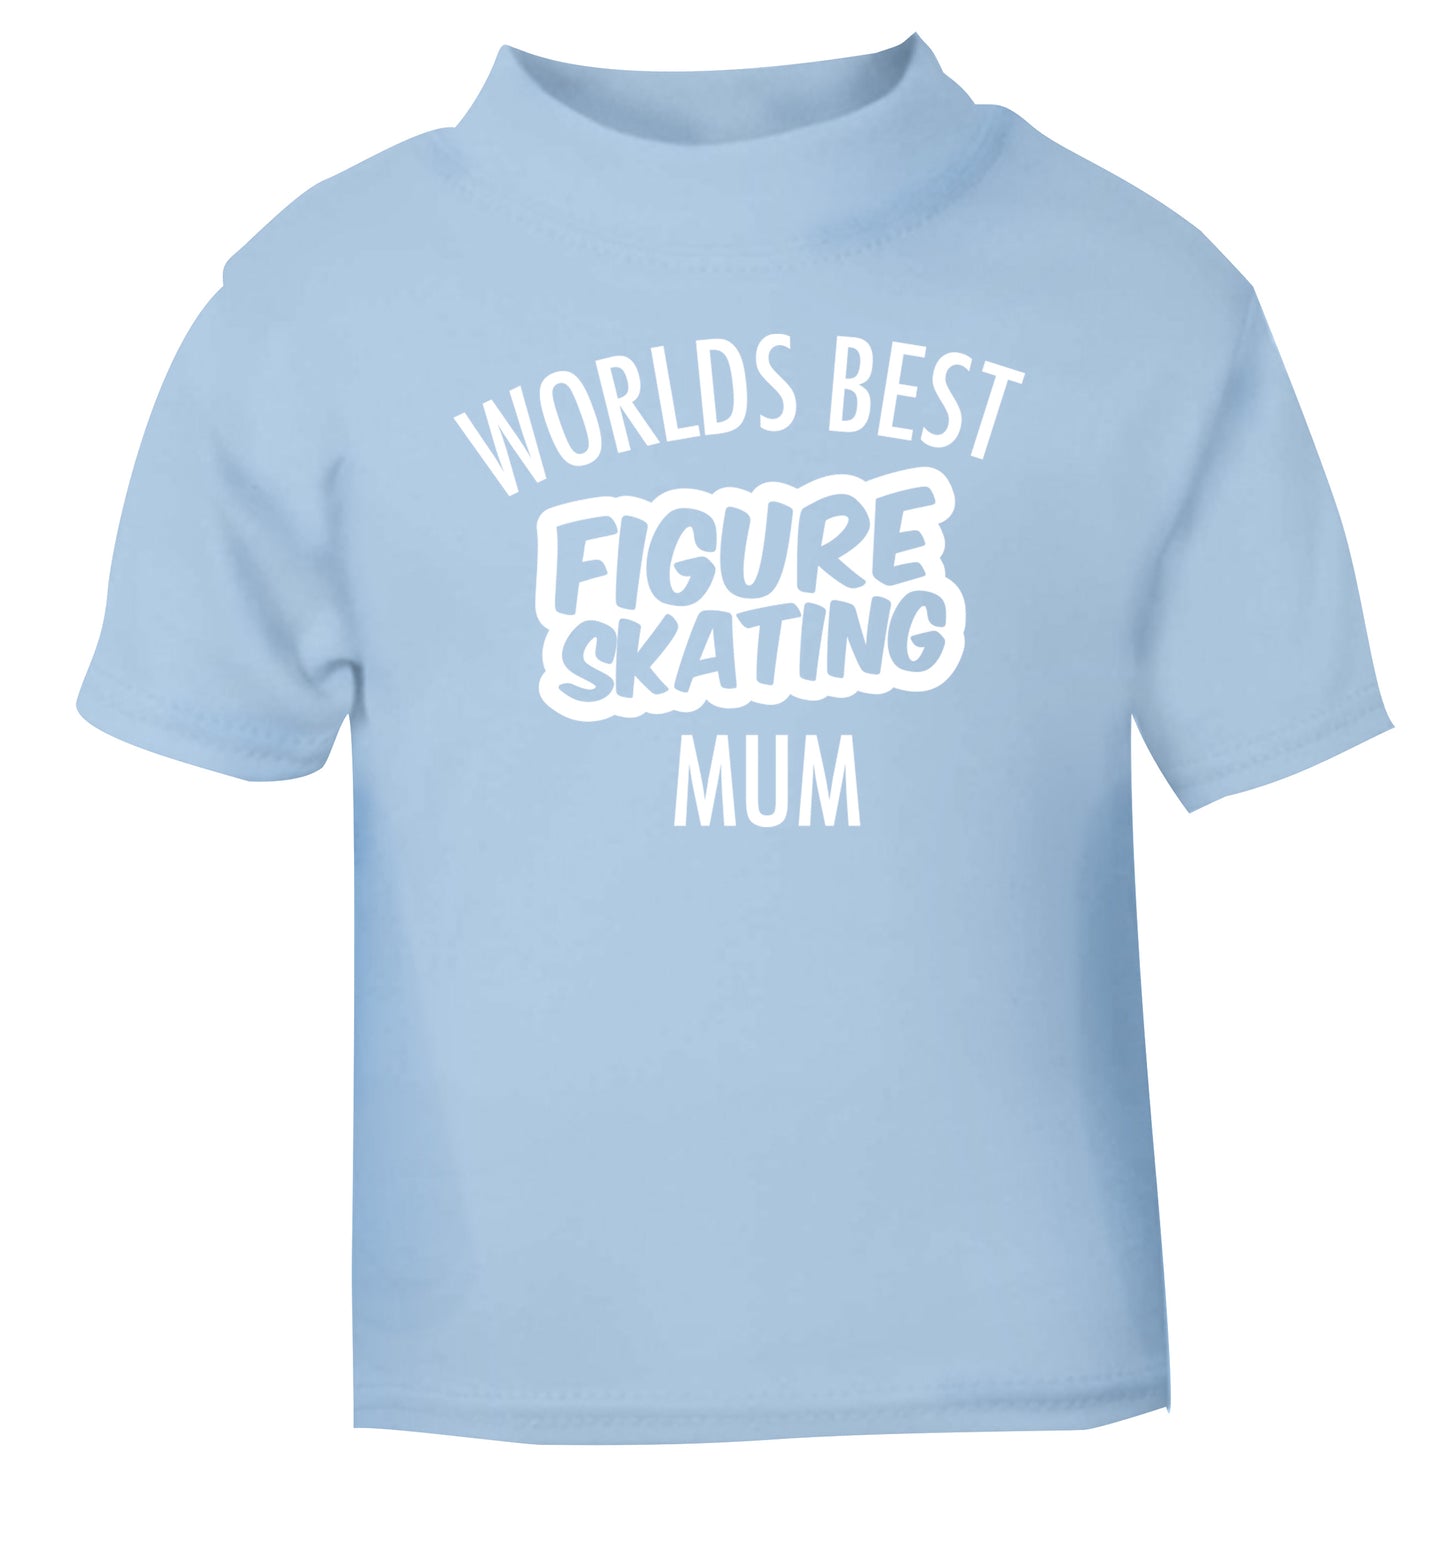 Worlds best figure skating mum light blue Baby Toddler Tshirt 2 Years